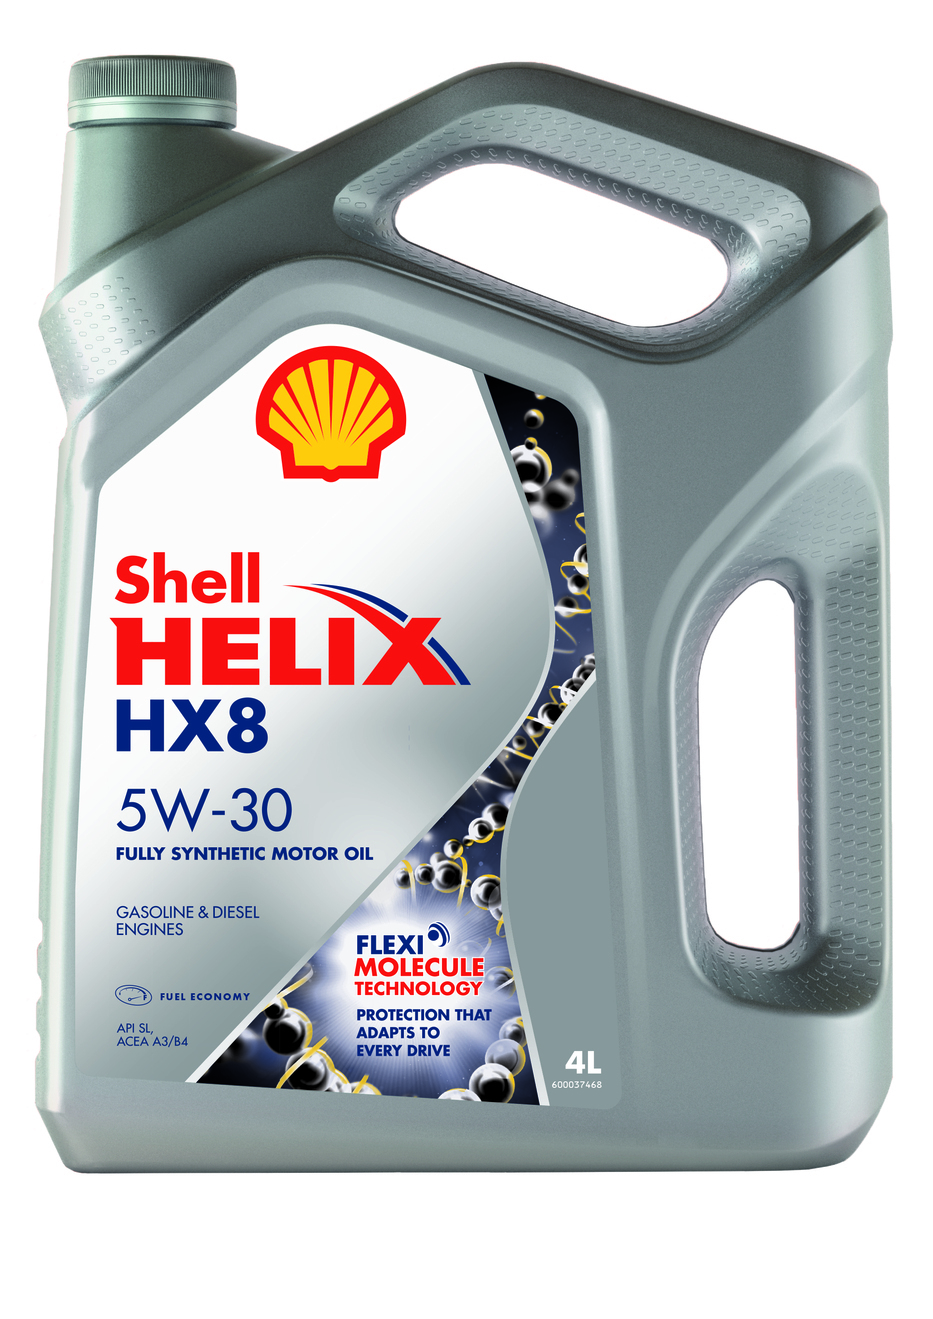 Shell Helix HX8 &nbsp;&nbsp;